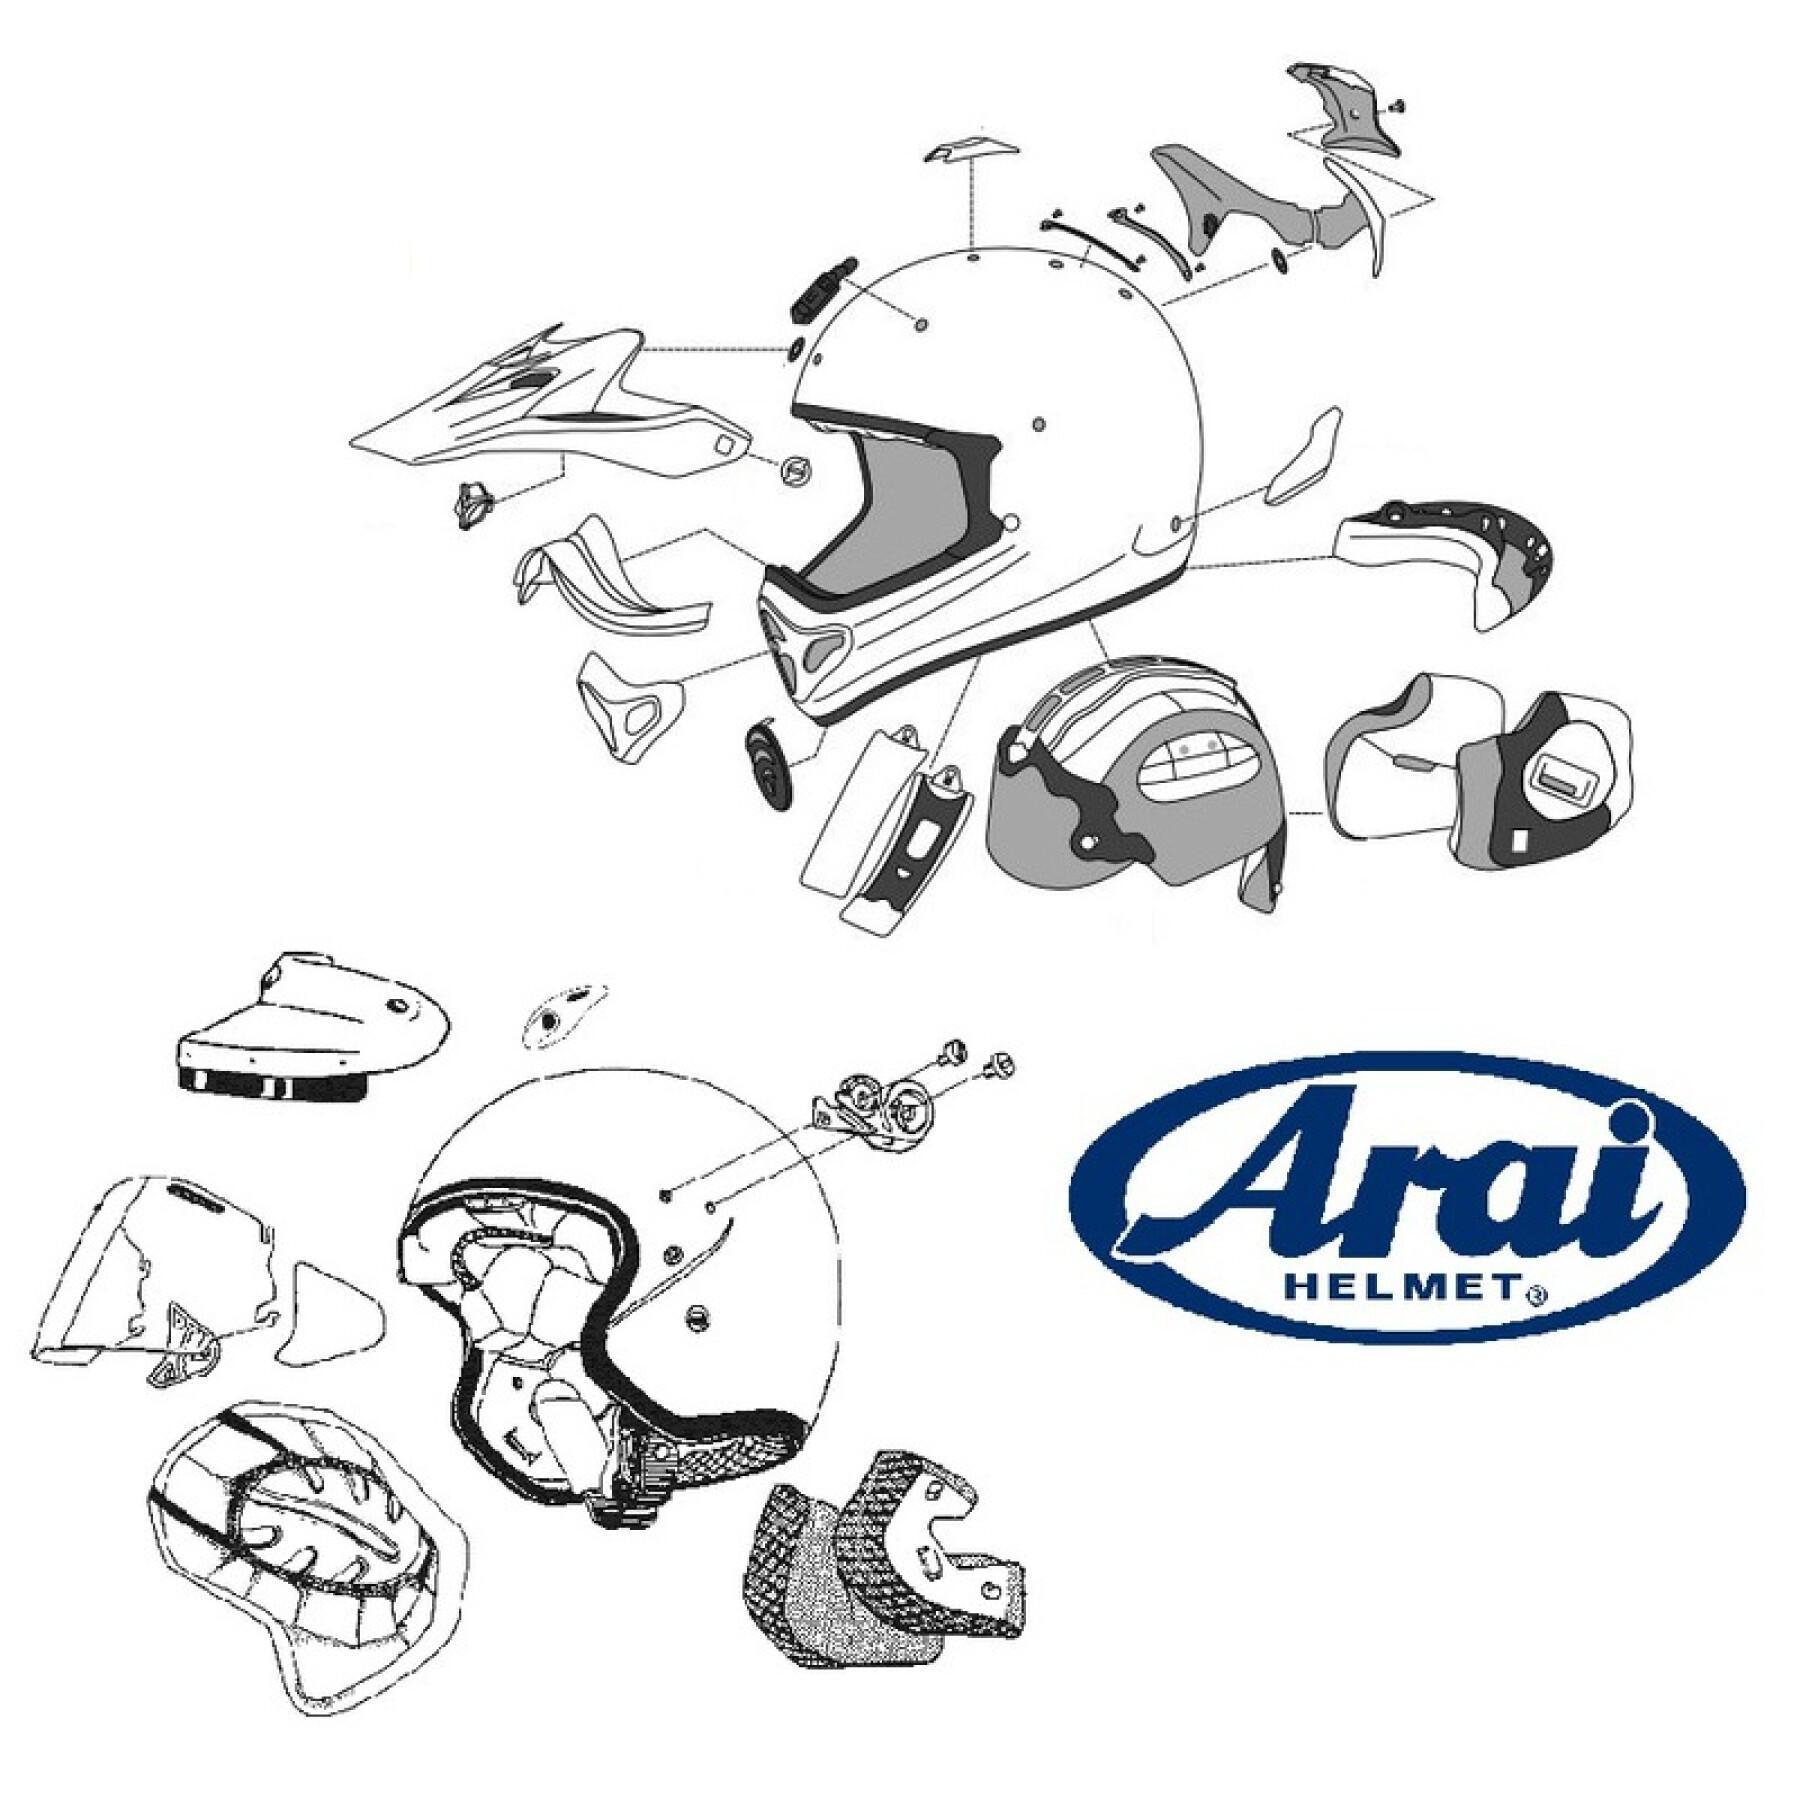 Ventilação do capacete de motocicleta Arai DDL Duct-2